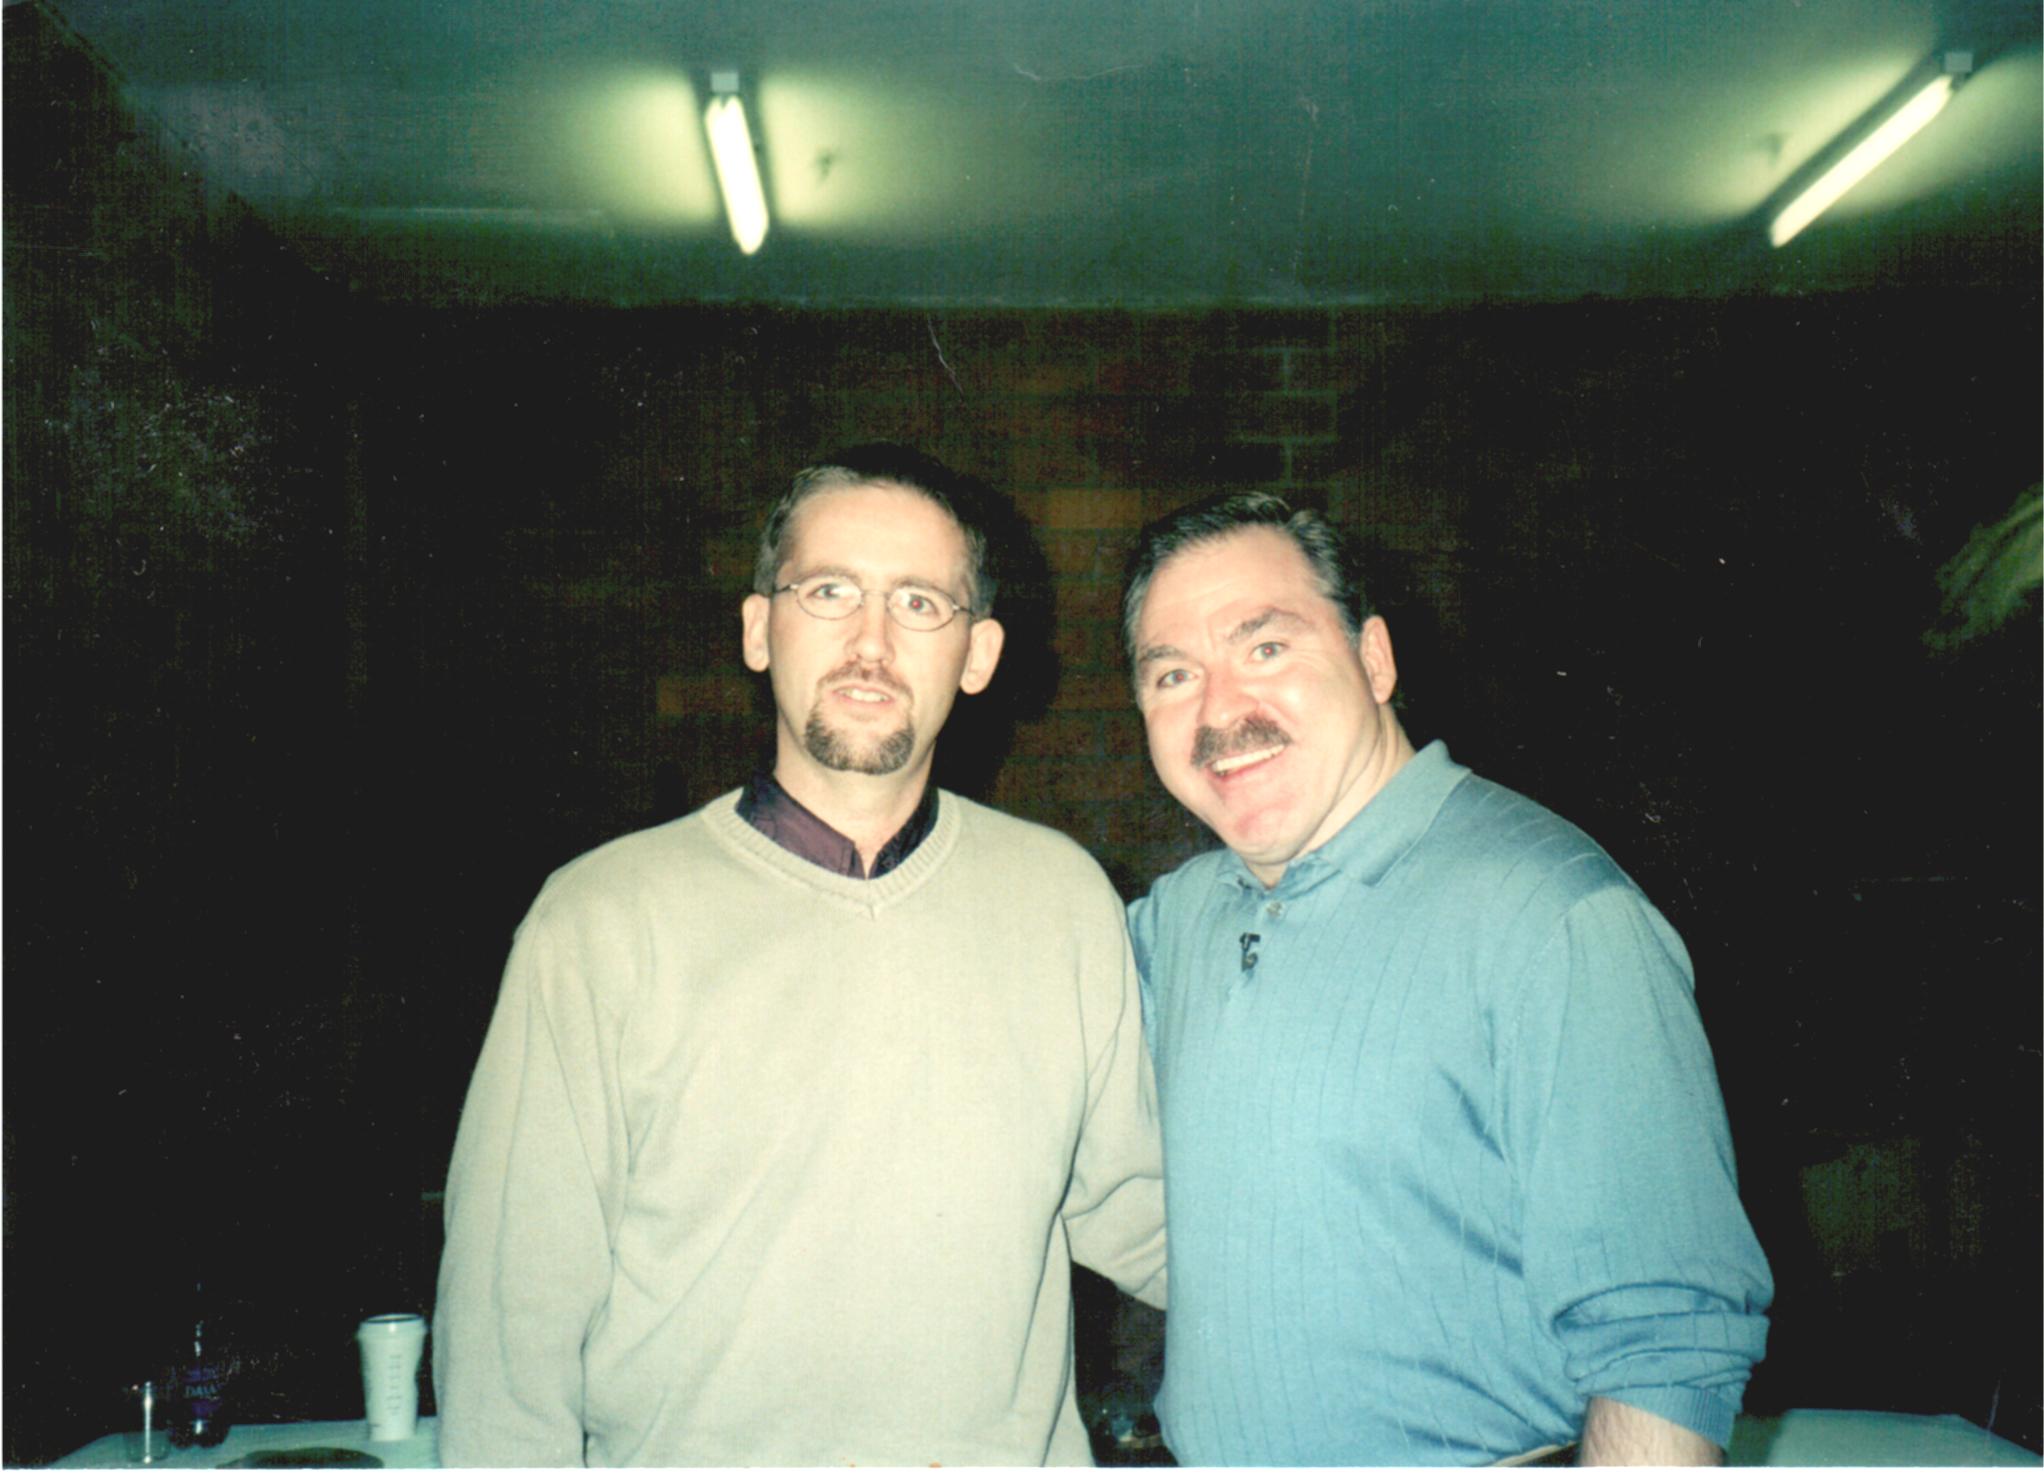 Chris with Medium James Van Praagh in 2001